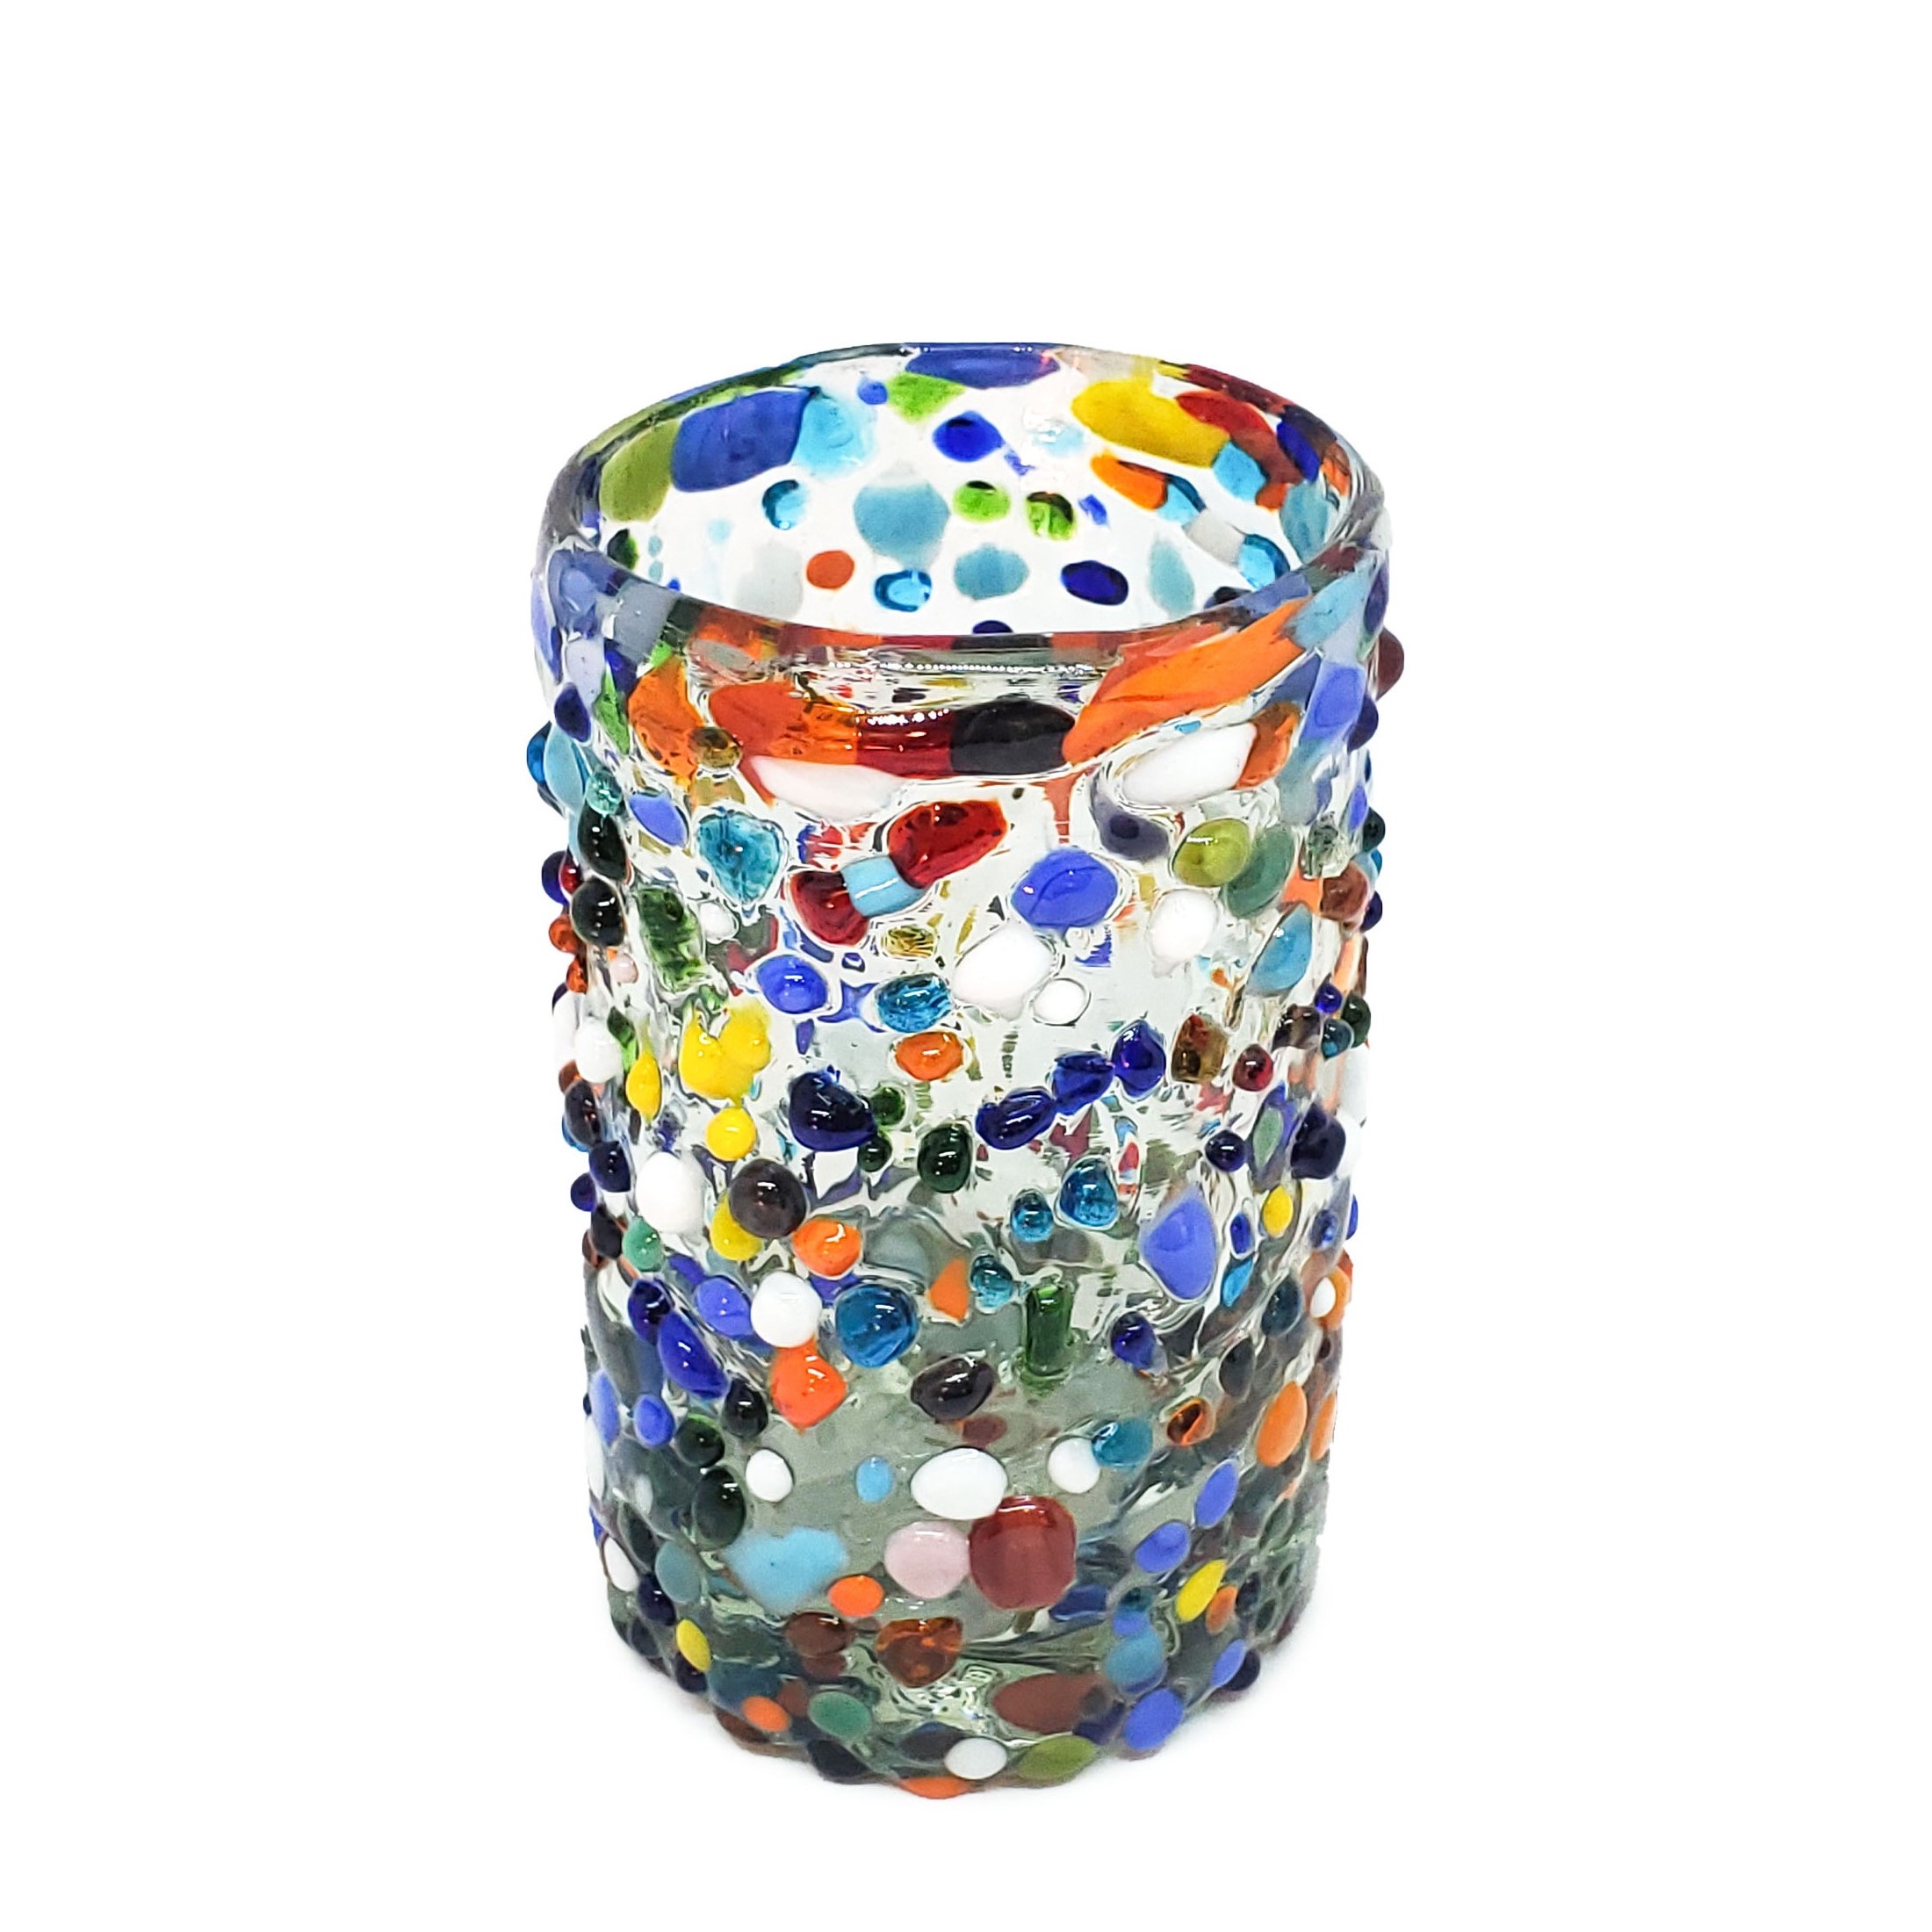 VIDRIO SOPLADO / Juego de 6 vasos Jugo 9oz Confeti granizado / Deje entrar a la primavera en su casa con éste colorido juego de vasos. El decorado con vidrio multicolor los hace resaltar en cualquier lugar.